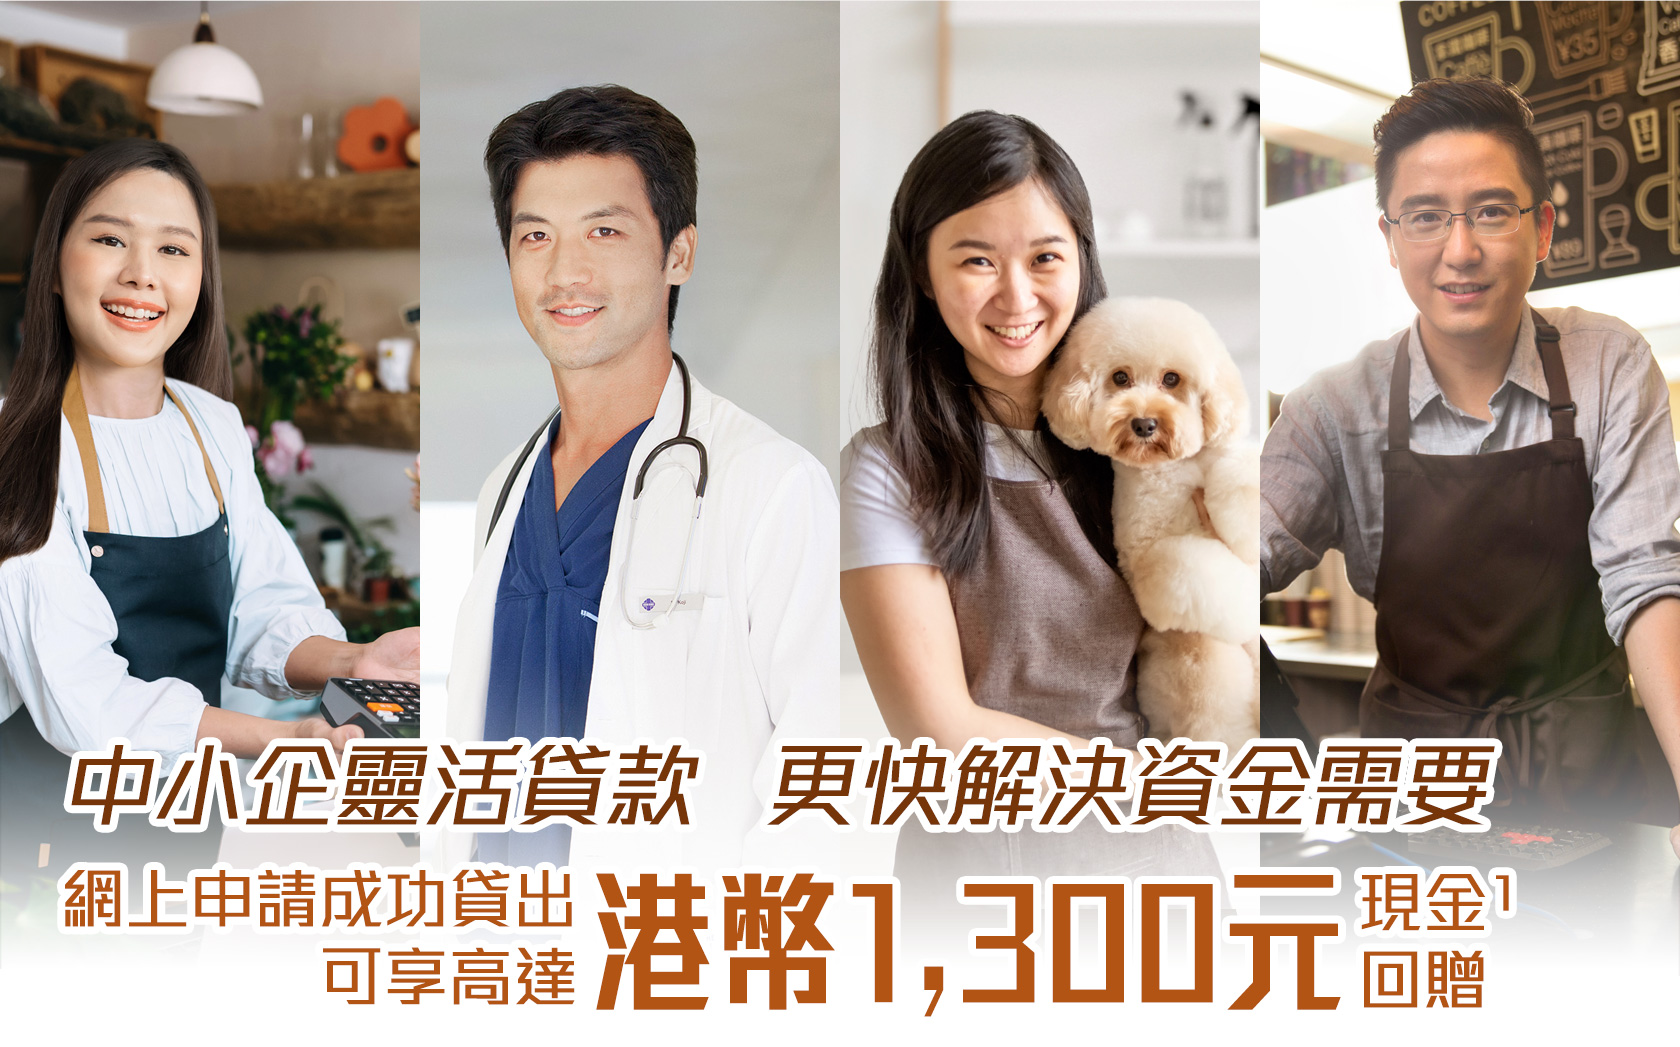 中小企靈活貸款   更快解決資金需要
網上申請成功貸出可享高達HK$1,300禮券